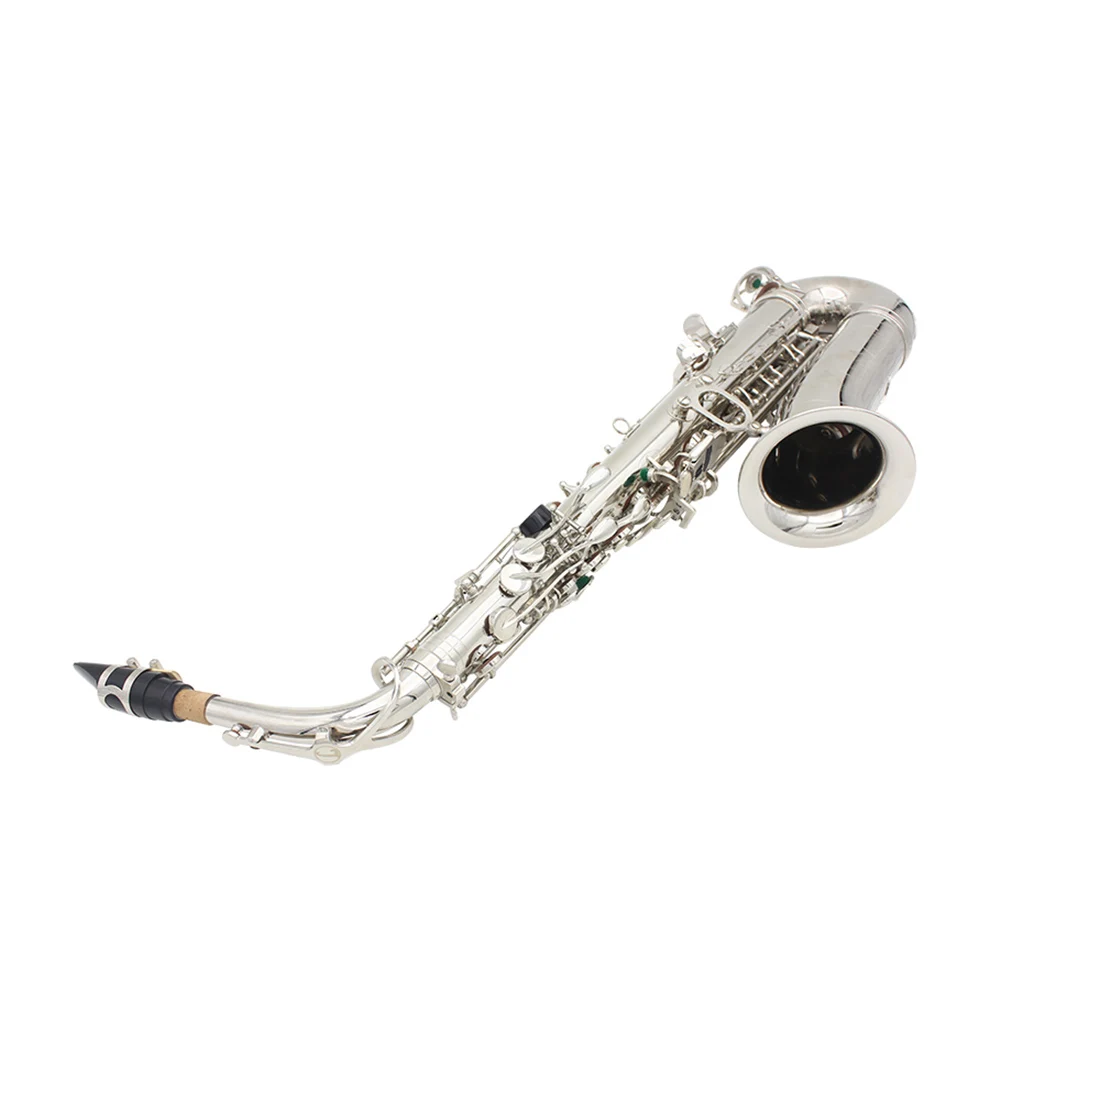 
 Латунный инструмент для тренировки выступлений SLADE Gold Eb, альт-саксофон с высококачественной упаковочной коробкой, аксессуары, оптовые цены  